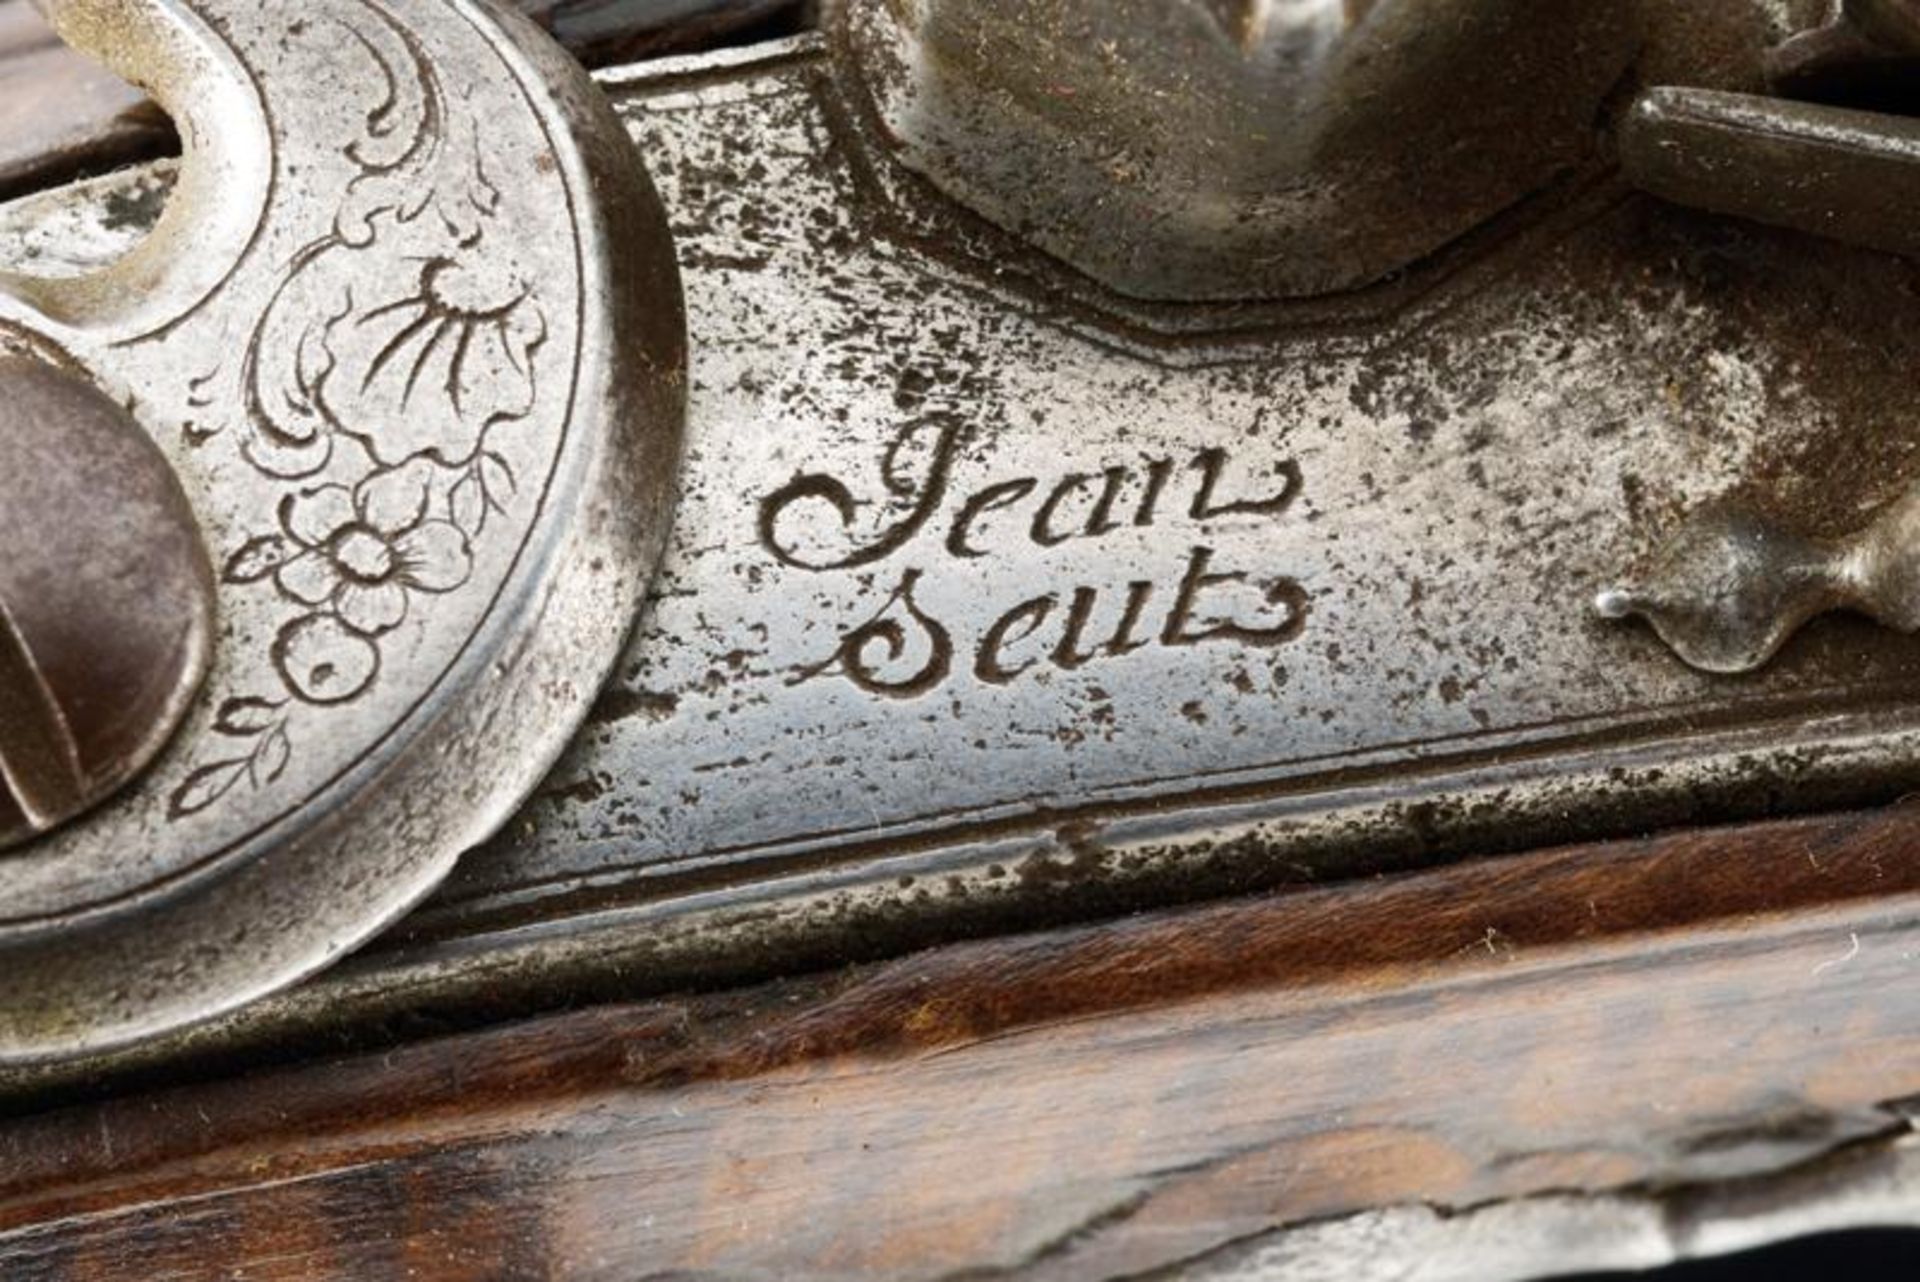 A flintlock pistol by Jean Seuts (Seux) - Bild 5 aus 9